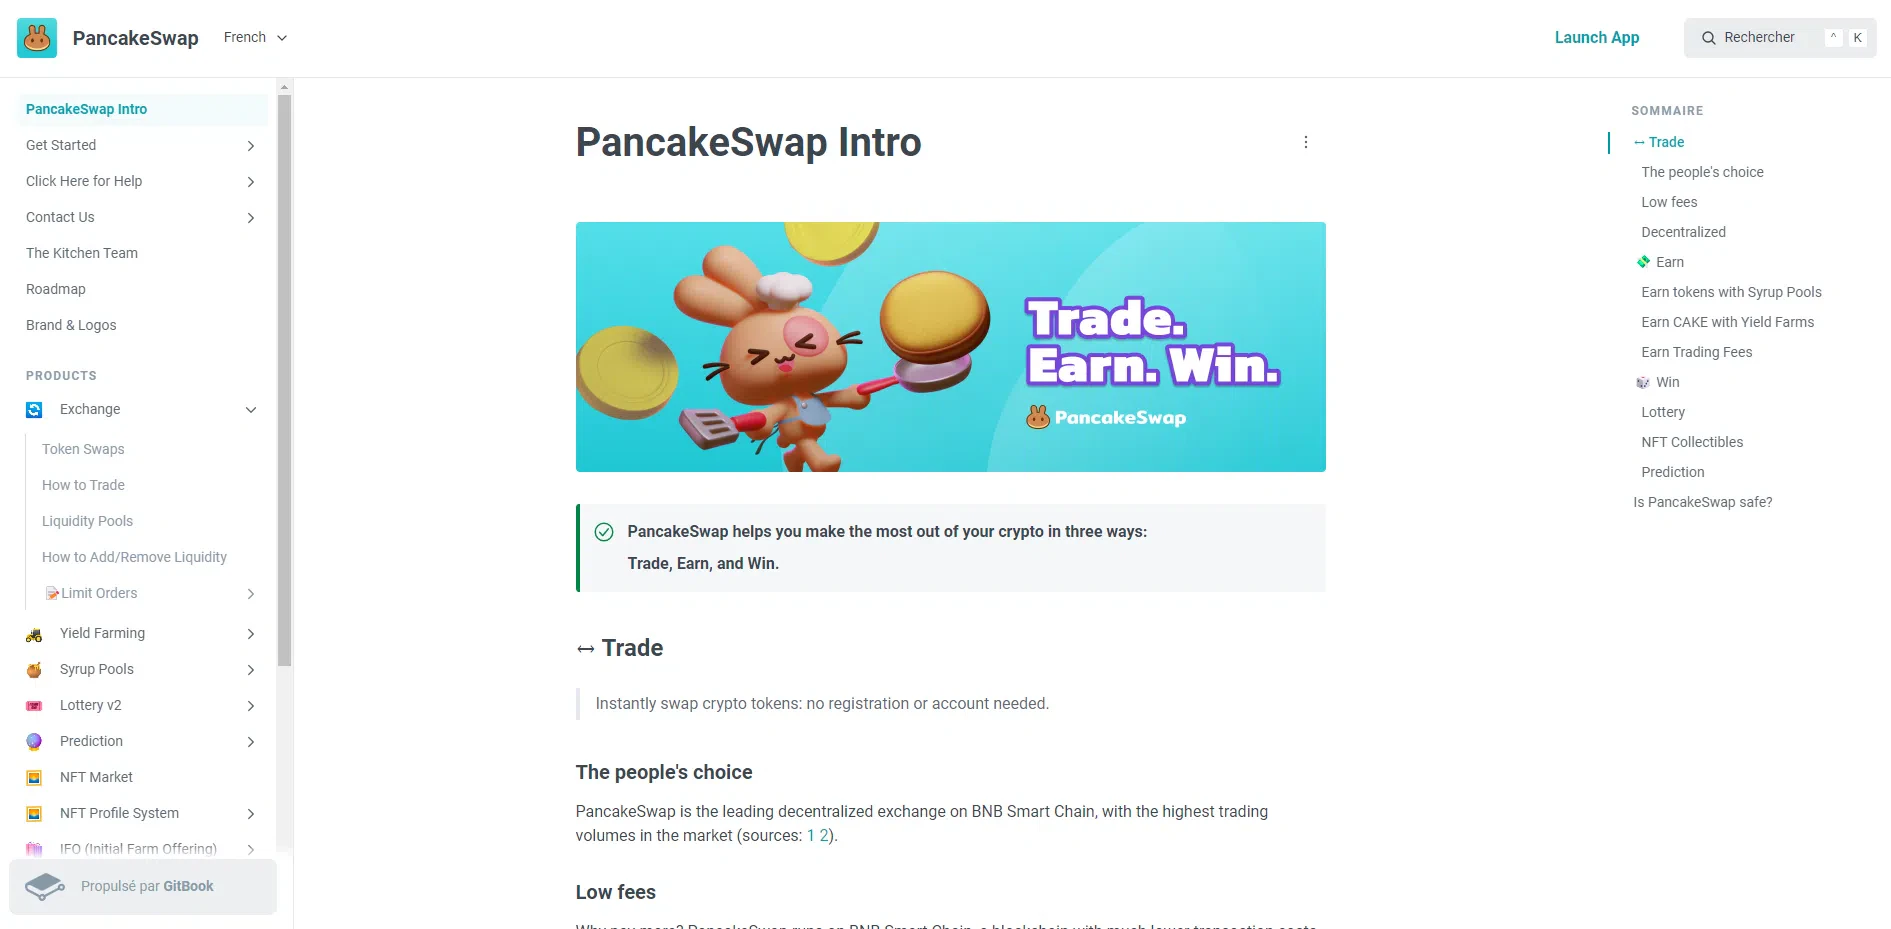 la documentation pour bien utiliser les services de pancakeswap